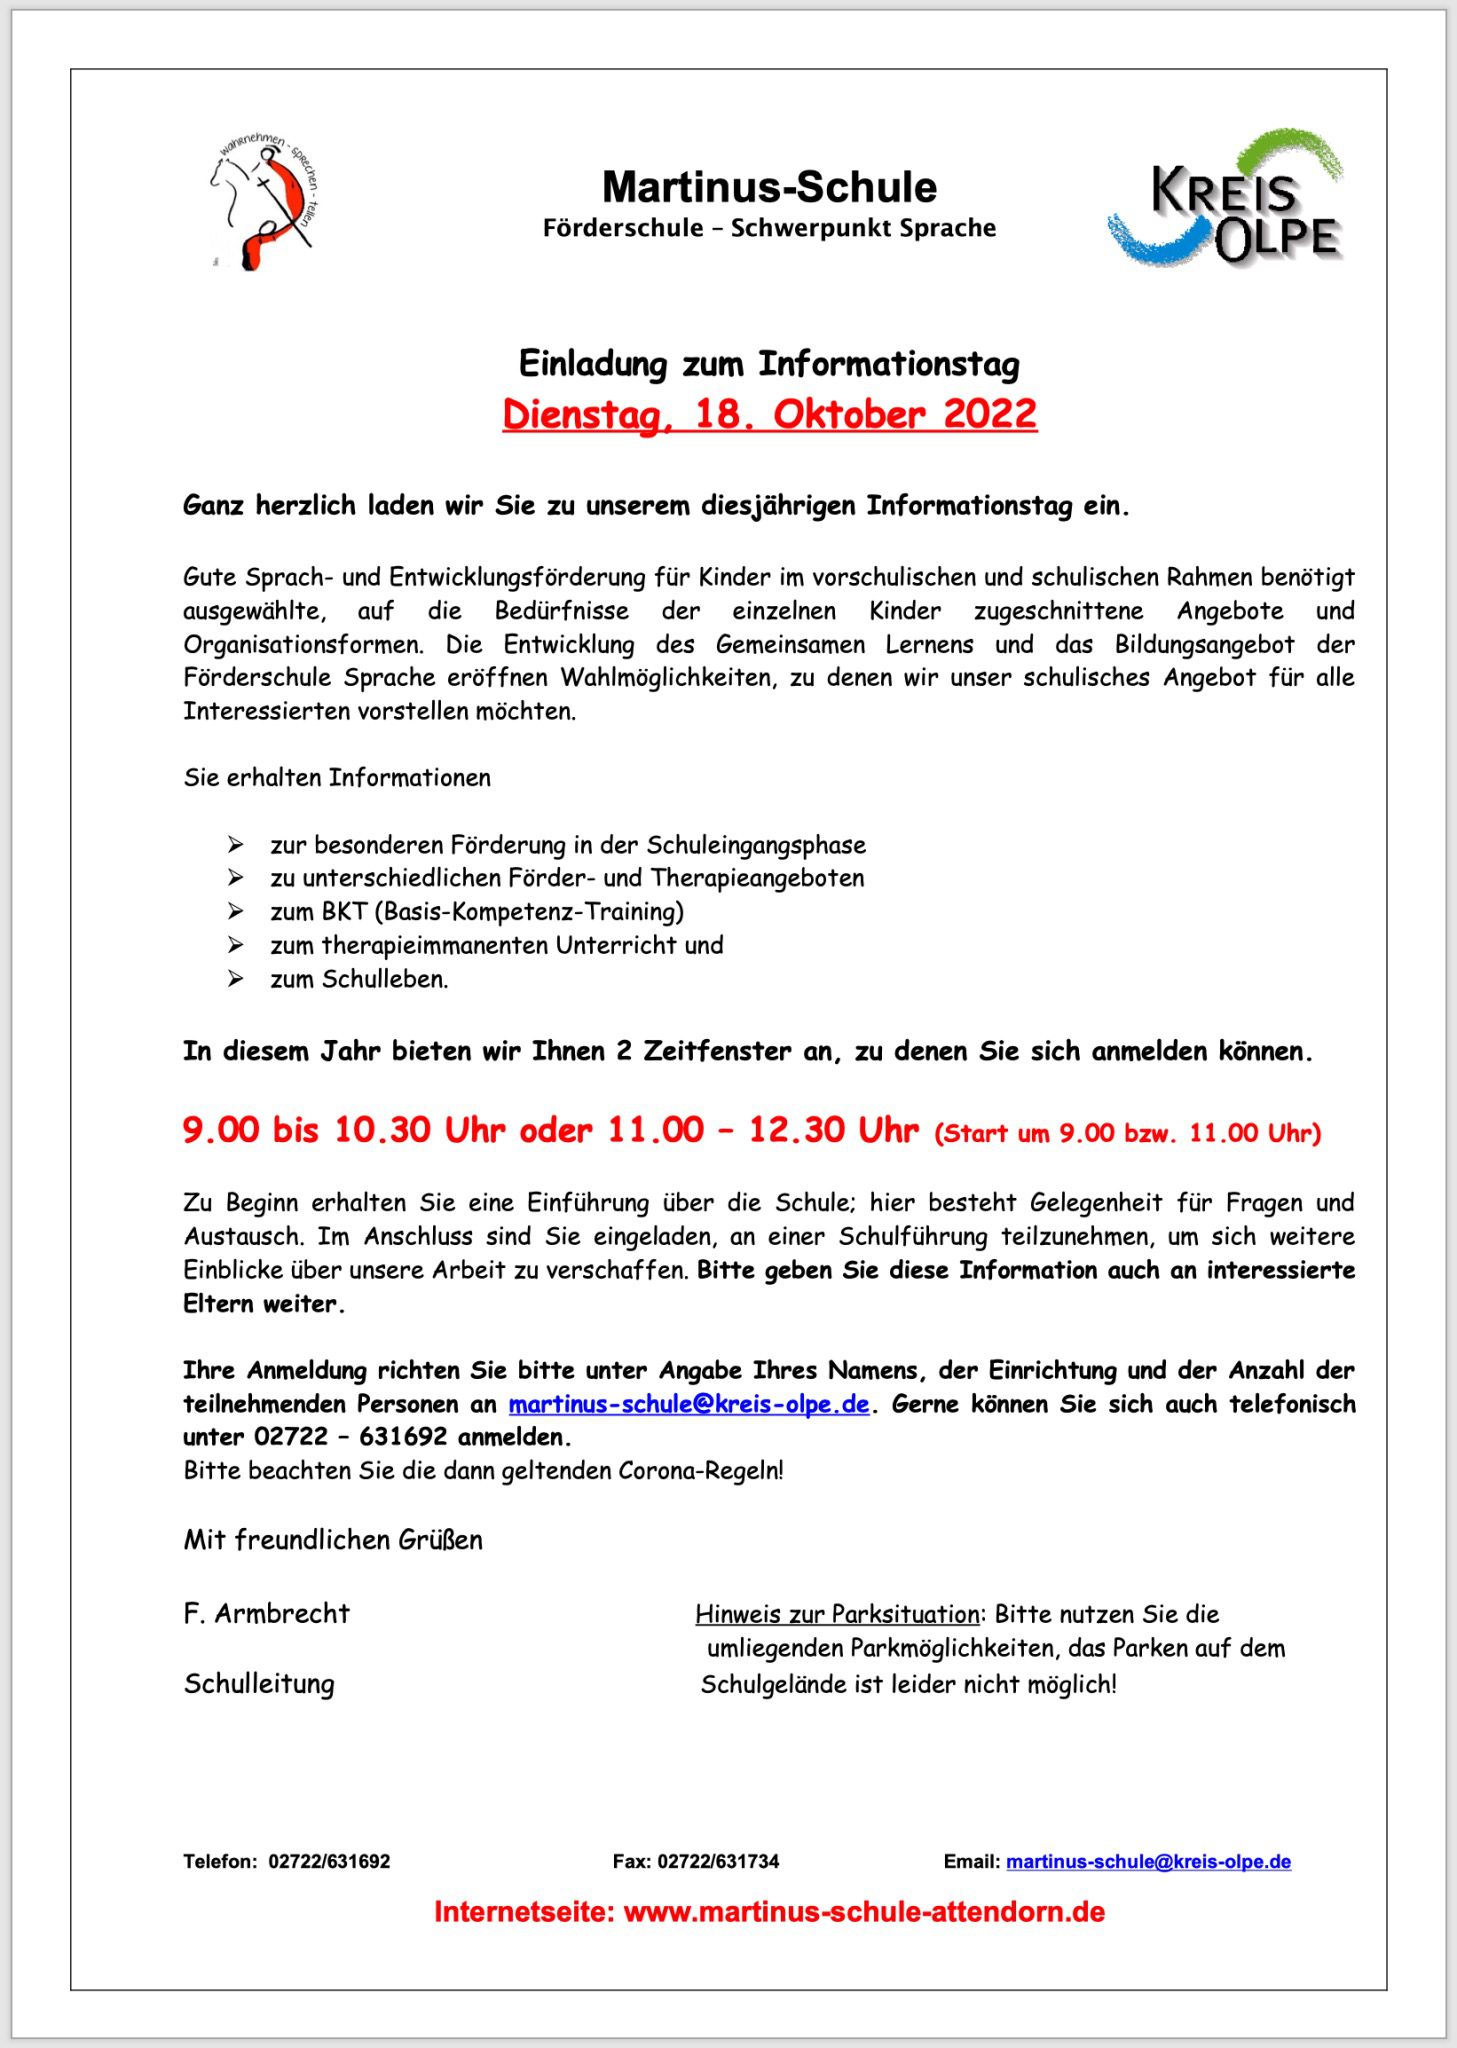 Einladung-Informationstag-2022-Martinus-Schule-Attendorn